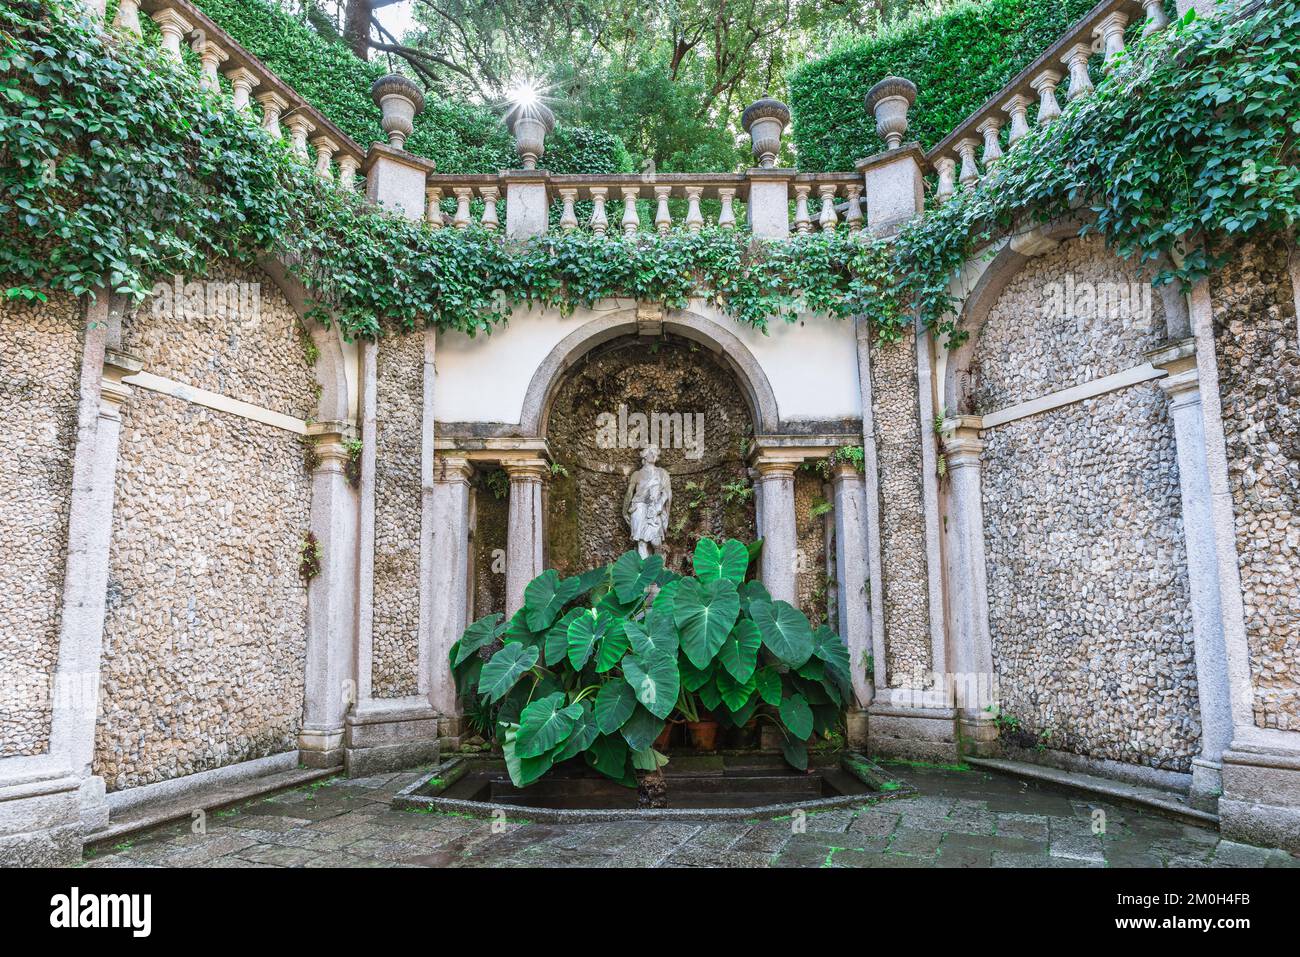 Atrio di Diana, vista del atrio de Diana - un espacio neoclásico en los jardines de Isola Bella, Islas Borromeo, Piamonte, Italia Foto de stock